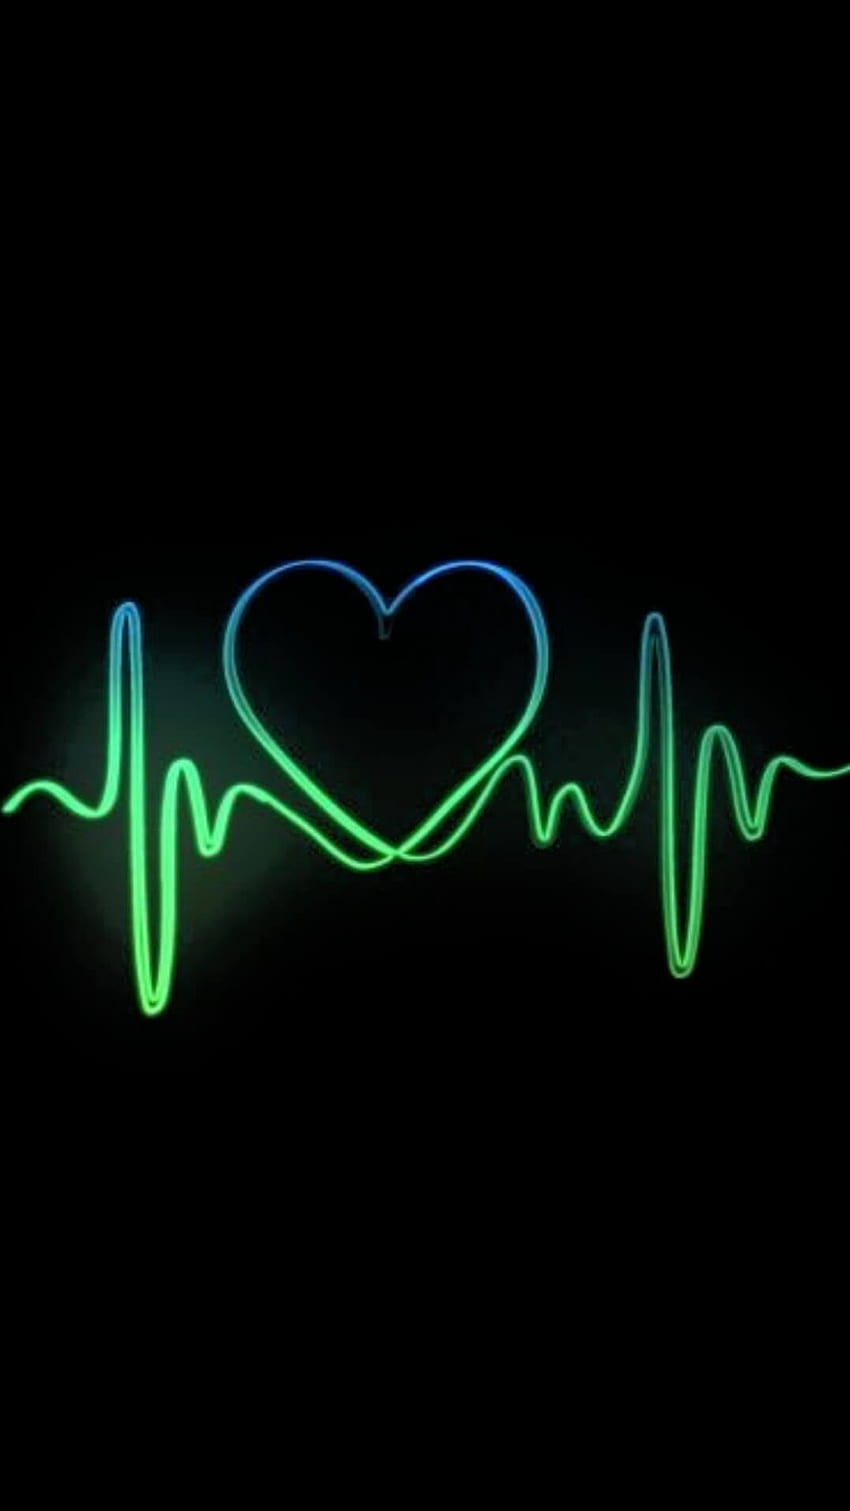 Heart Dp Images For Whatsapp💕|Heart Wallpaper❤|Heart Dp Pics😍Mobile Phone  Wallpaper💖 | Heart wallpaper, Valentines wallpaper, Phone wallpaper